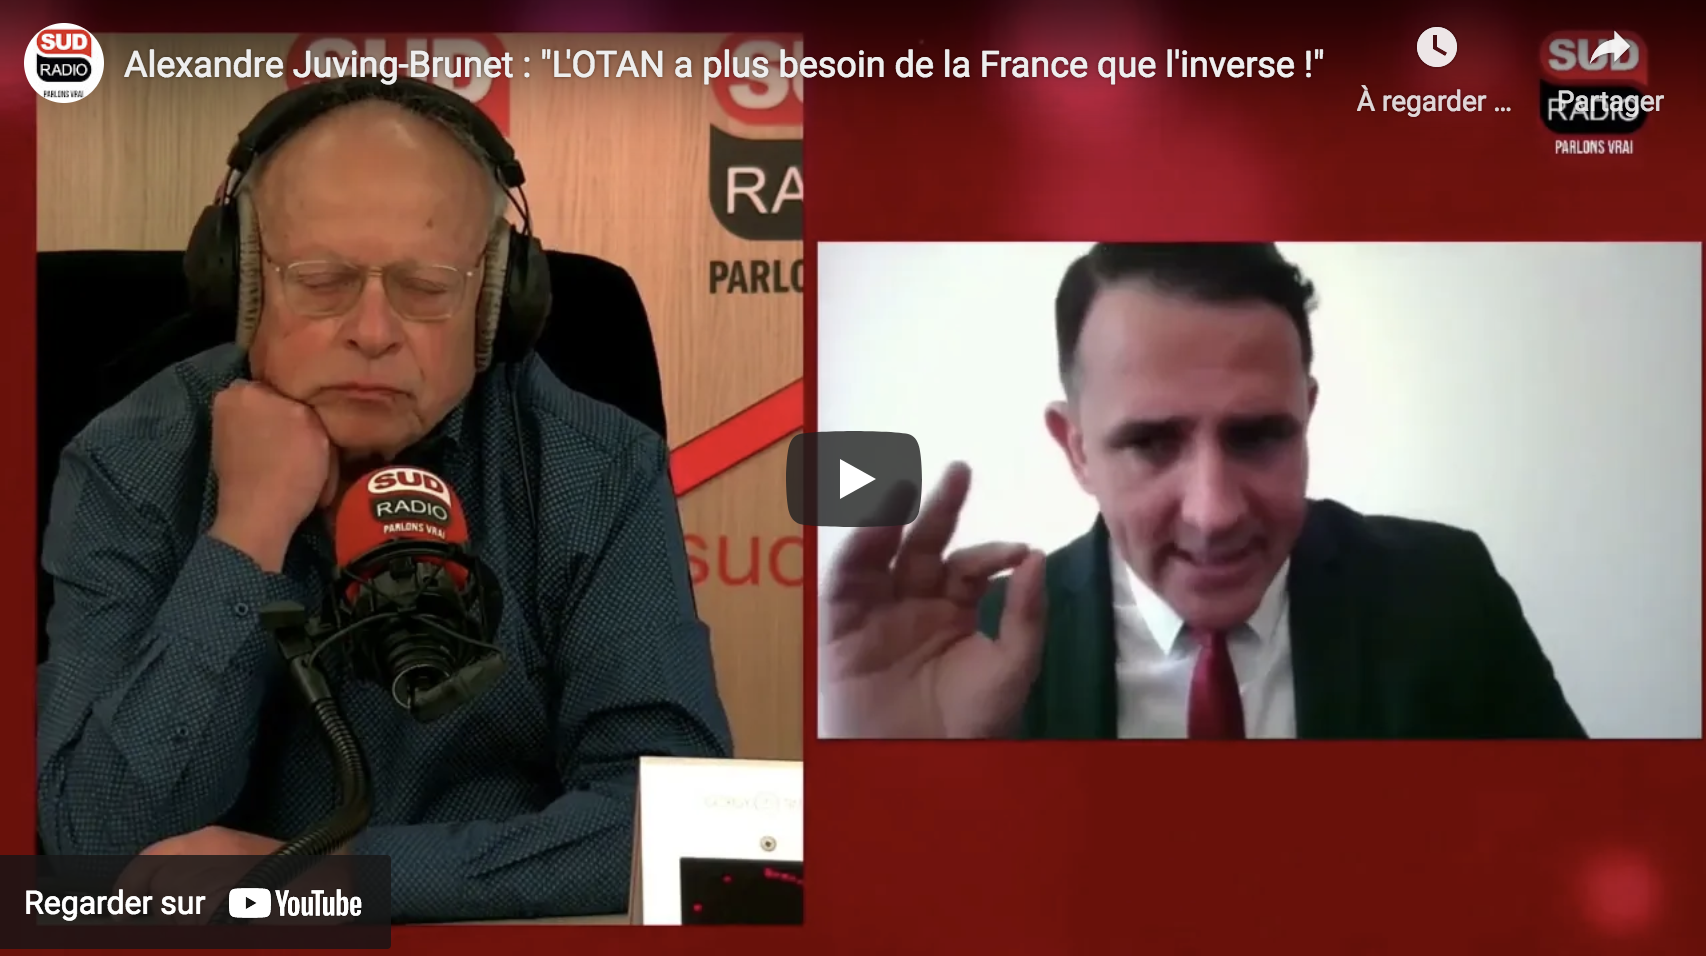 Alexandre Juving-Brunet : “L’OTAN a plus besoin de la France que l’inverse !” (VIDÉO)